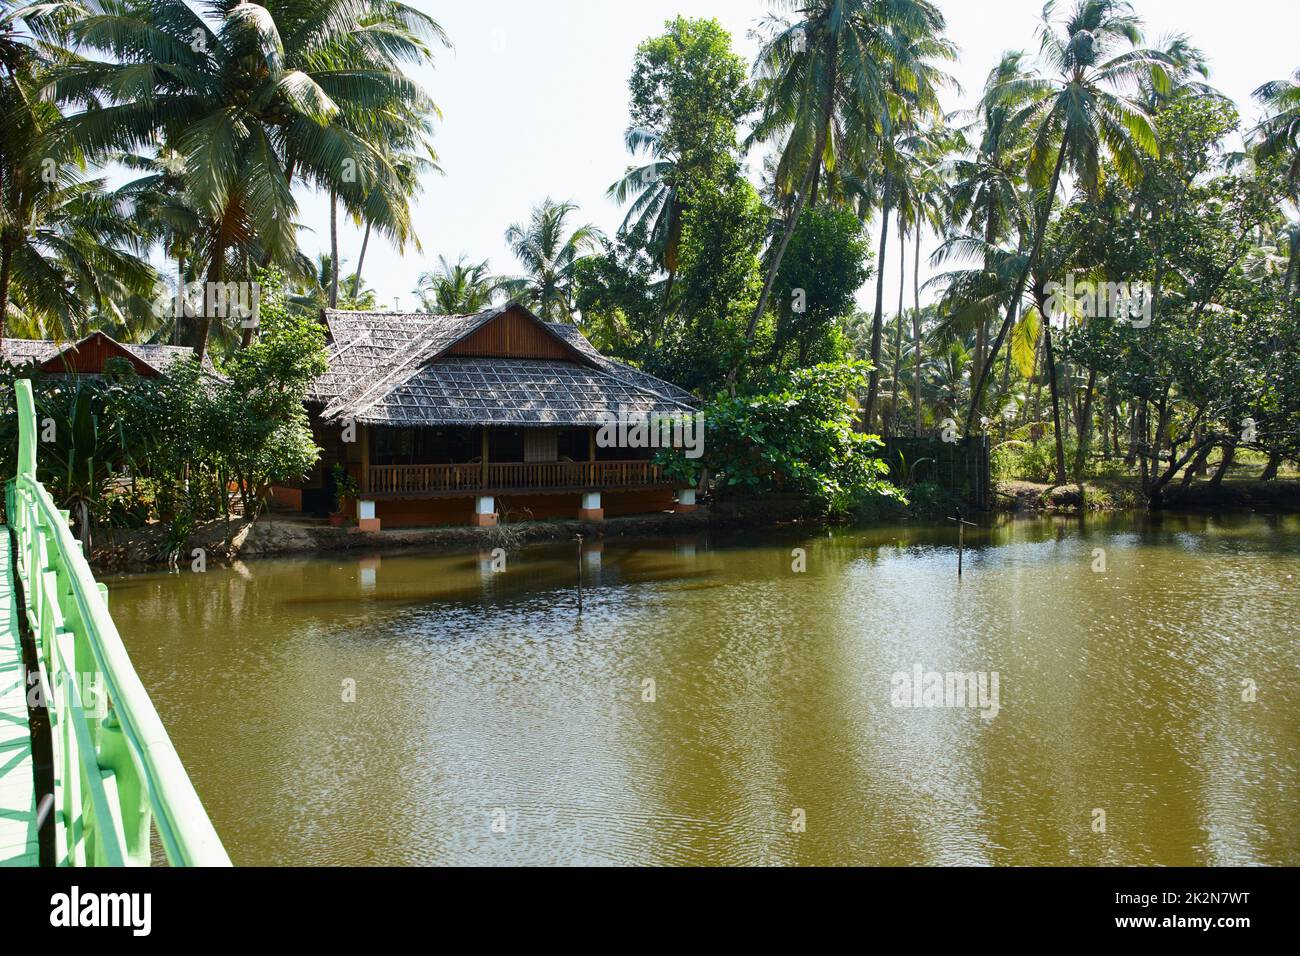 Tranquillité idyllique. Bâtiment traditionnel en bois entouré de palmiers tropicaux sur les rives d'une rivière en Inde. Banque D'Images